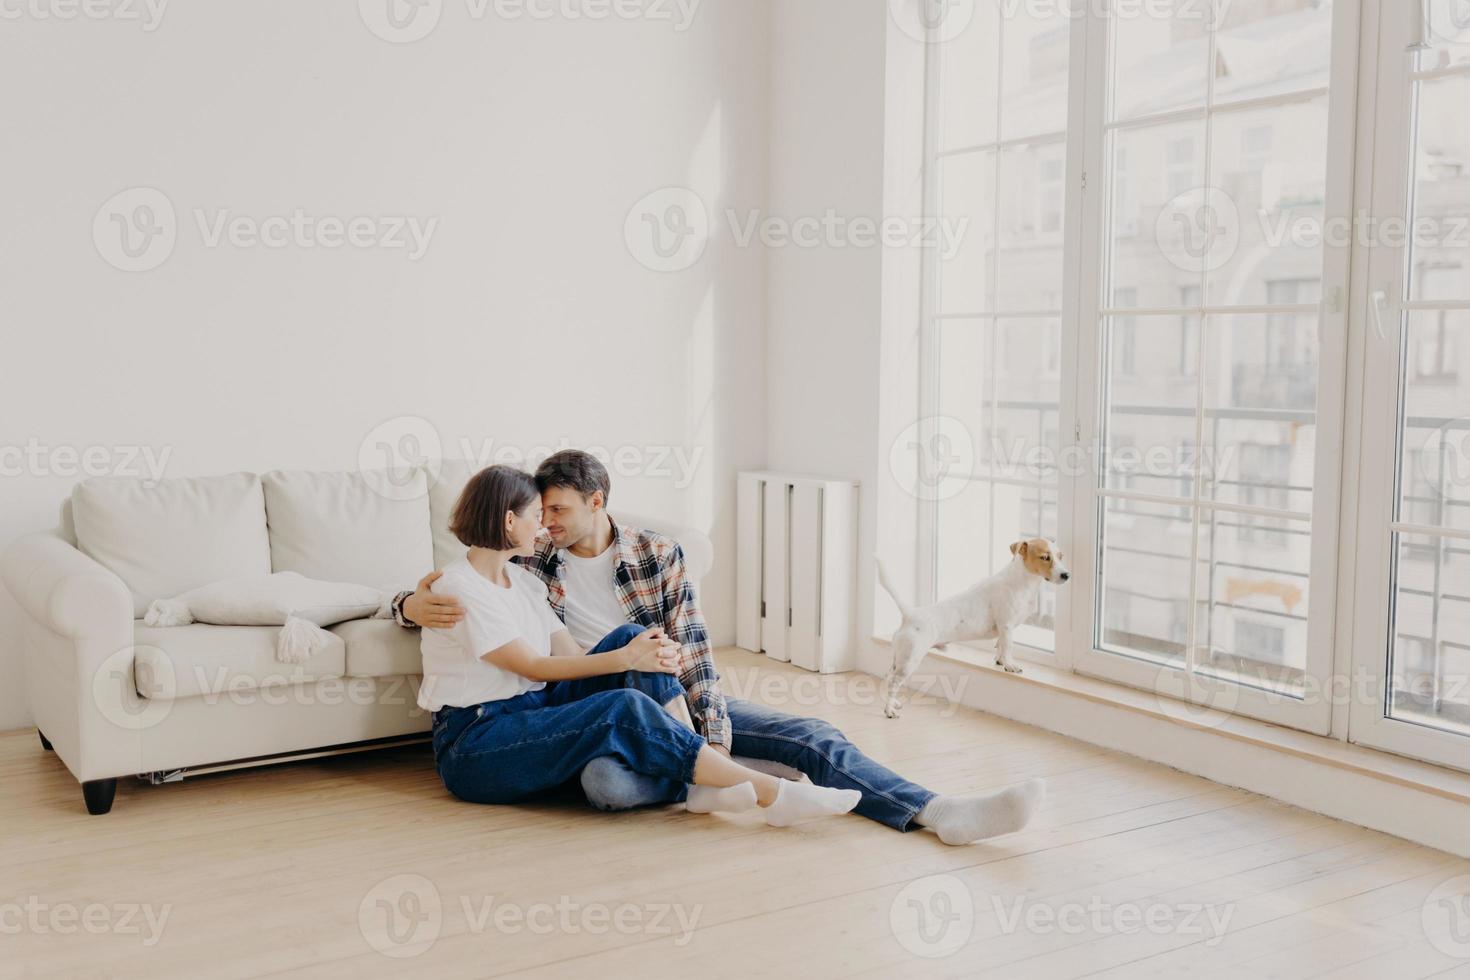 vista horizontal de una feliz y afectuosa pareja familiar vestida con ropa informal, abrazándose y expresándose amor el uno al otro, posando en el suelo cerca del sofá en un apartamento moderno, su mascota mira a través de una gran ventana foto